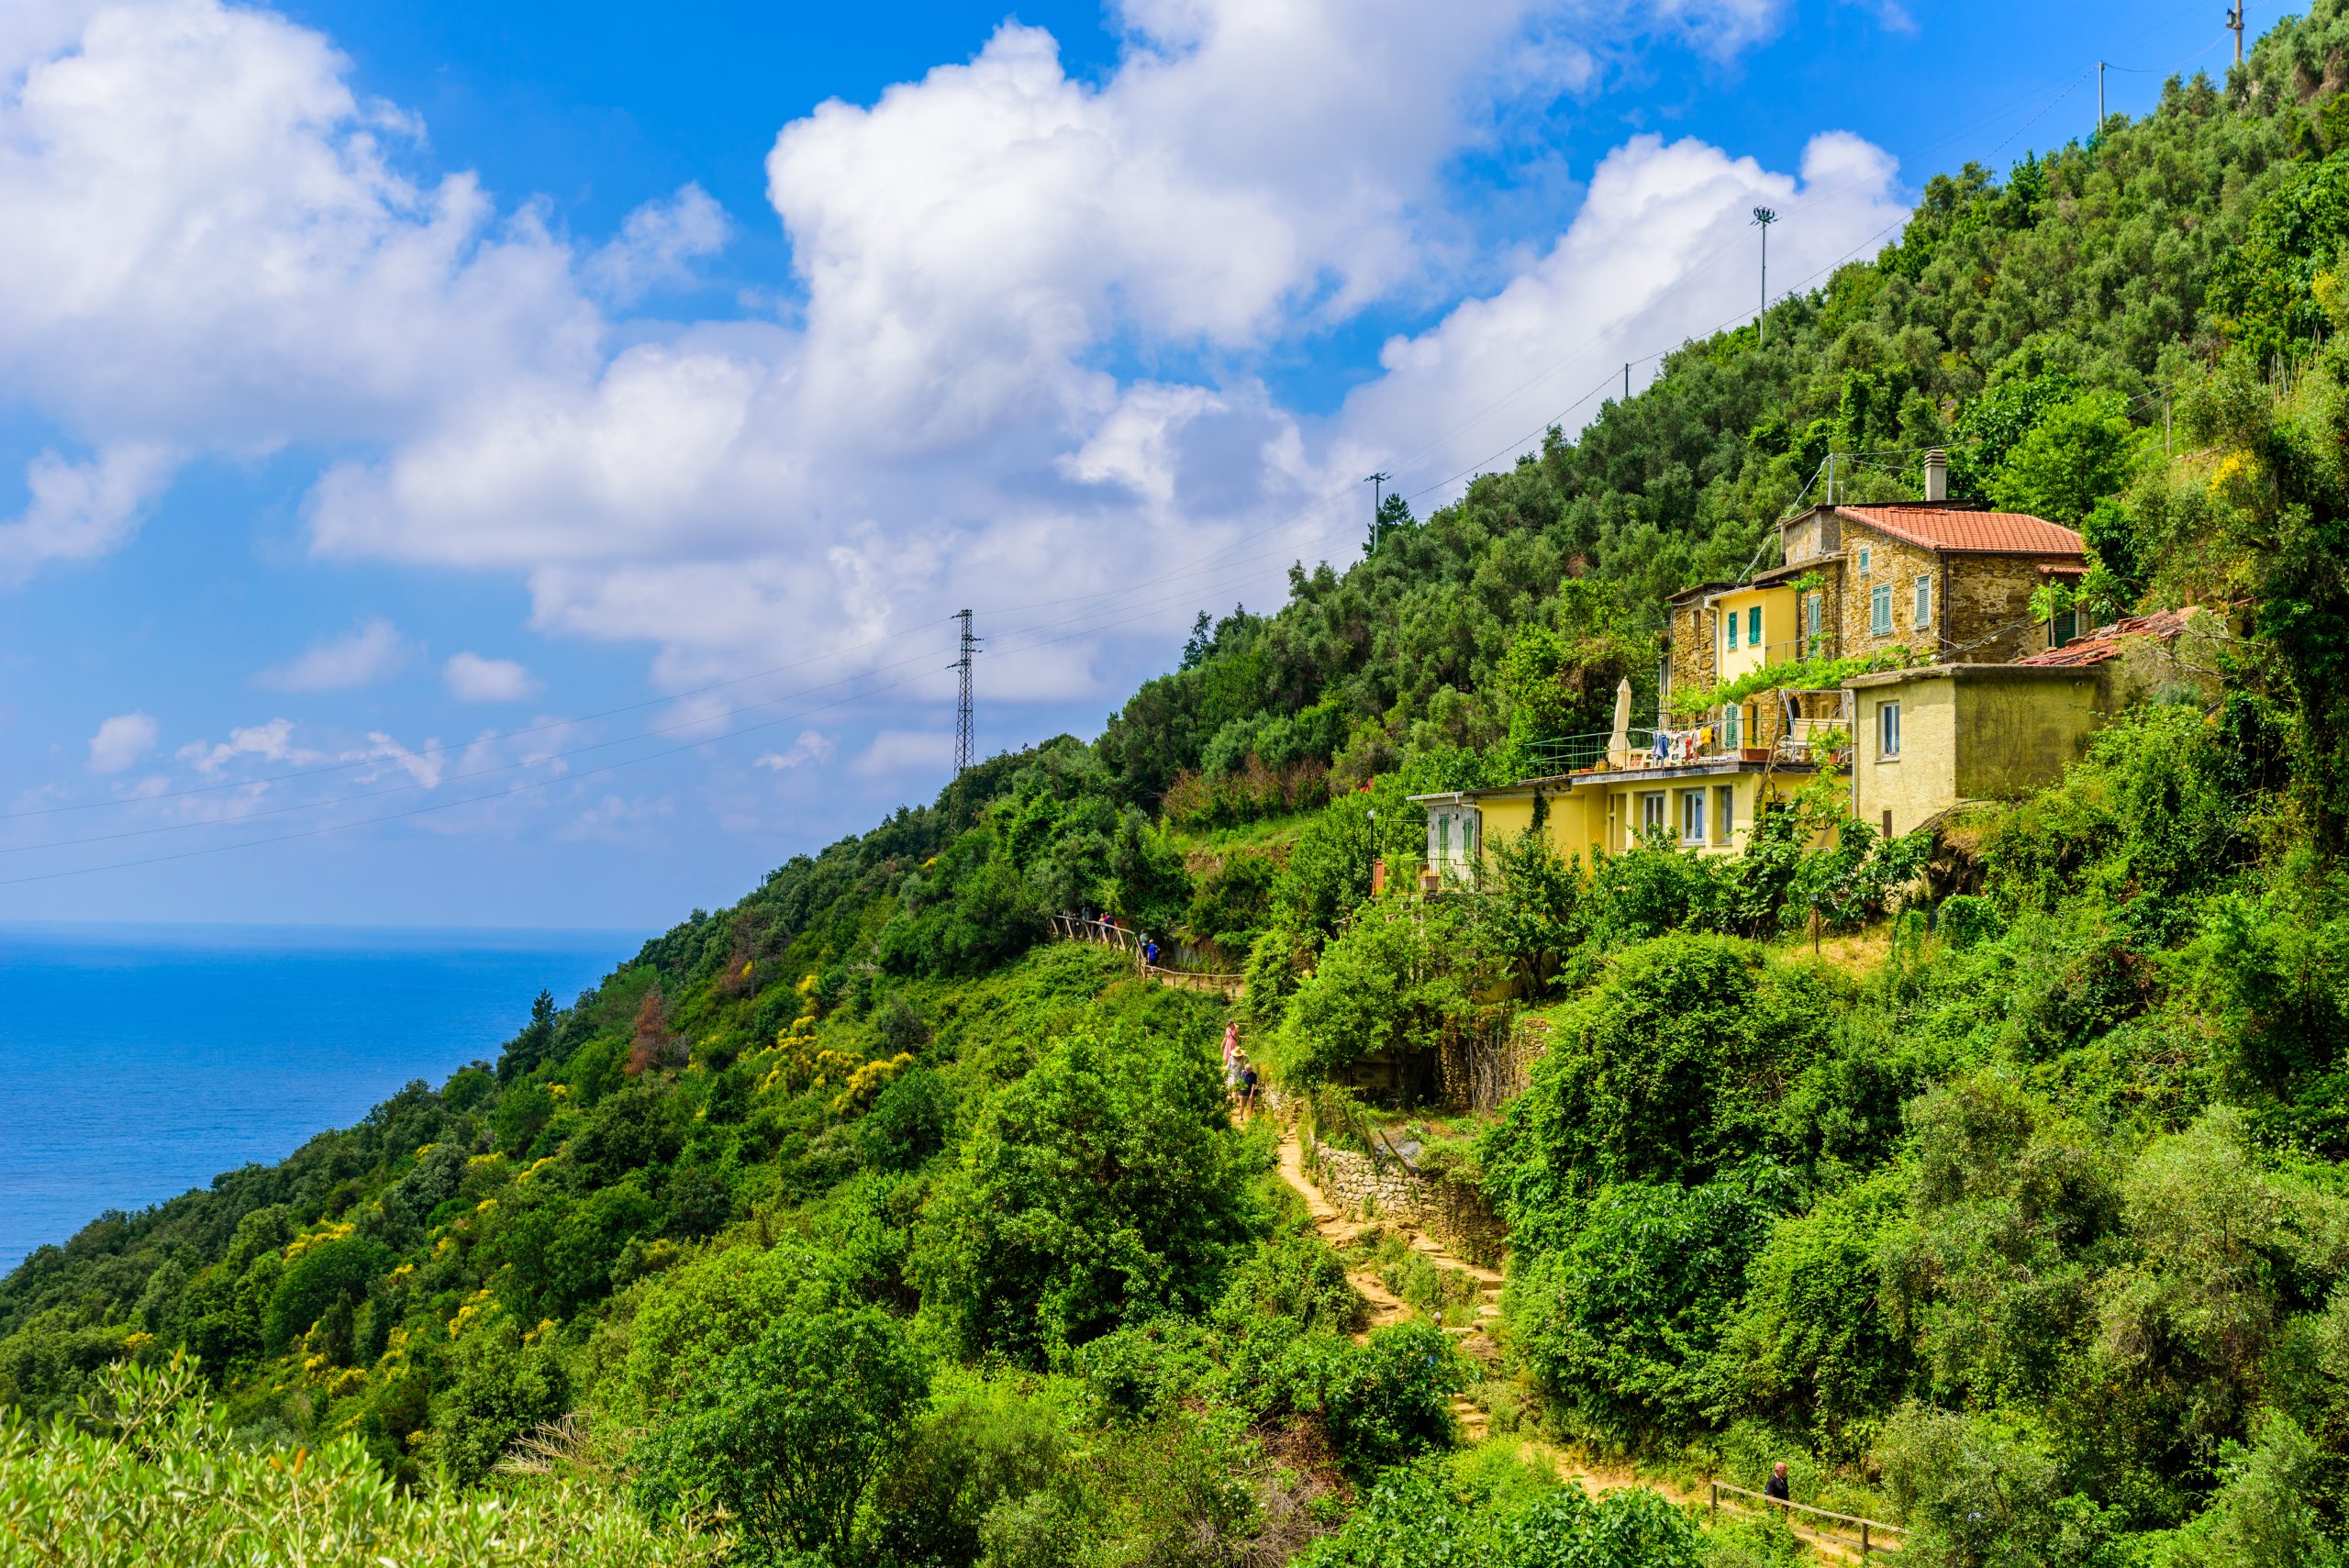 Wanderparadies Cinque Terre National Park an der Ligurischen Küste 